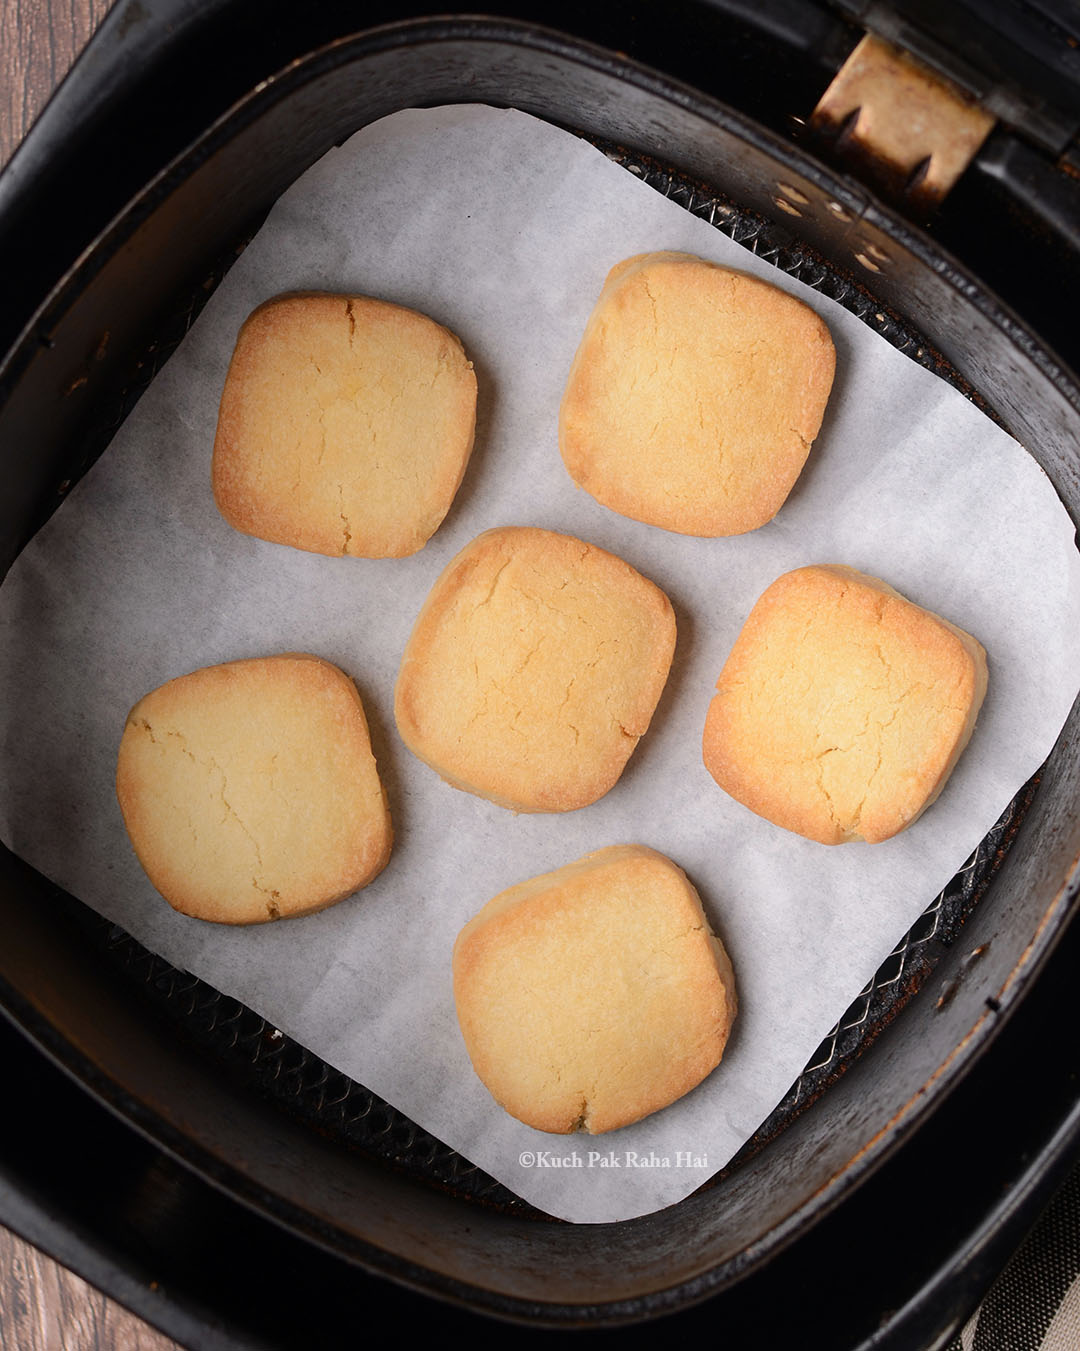 Cookies baked in air fryer.